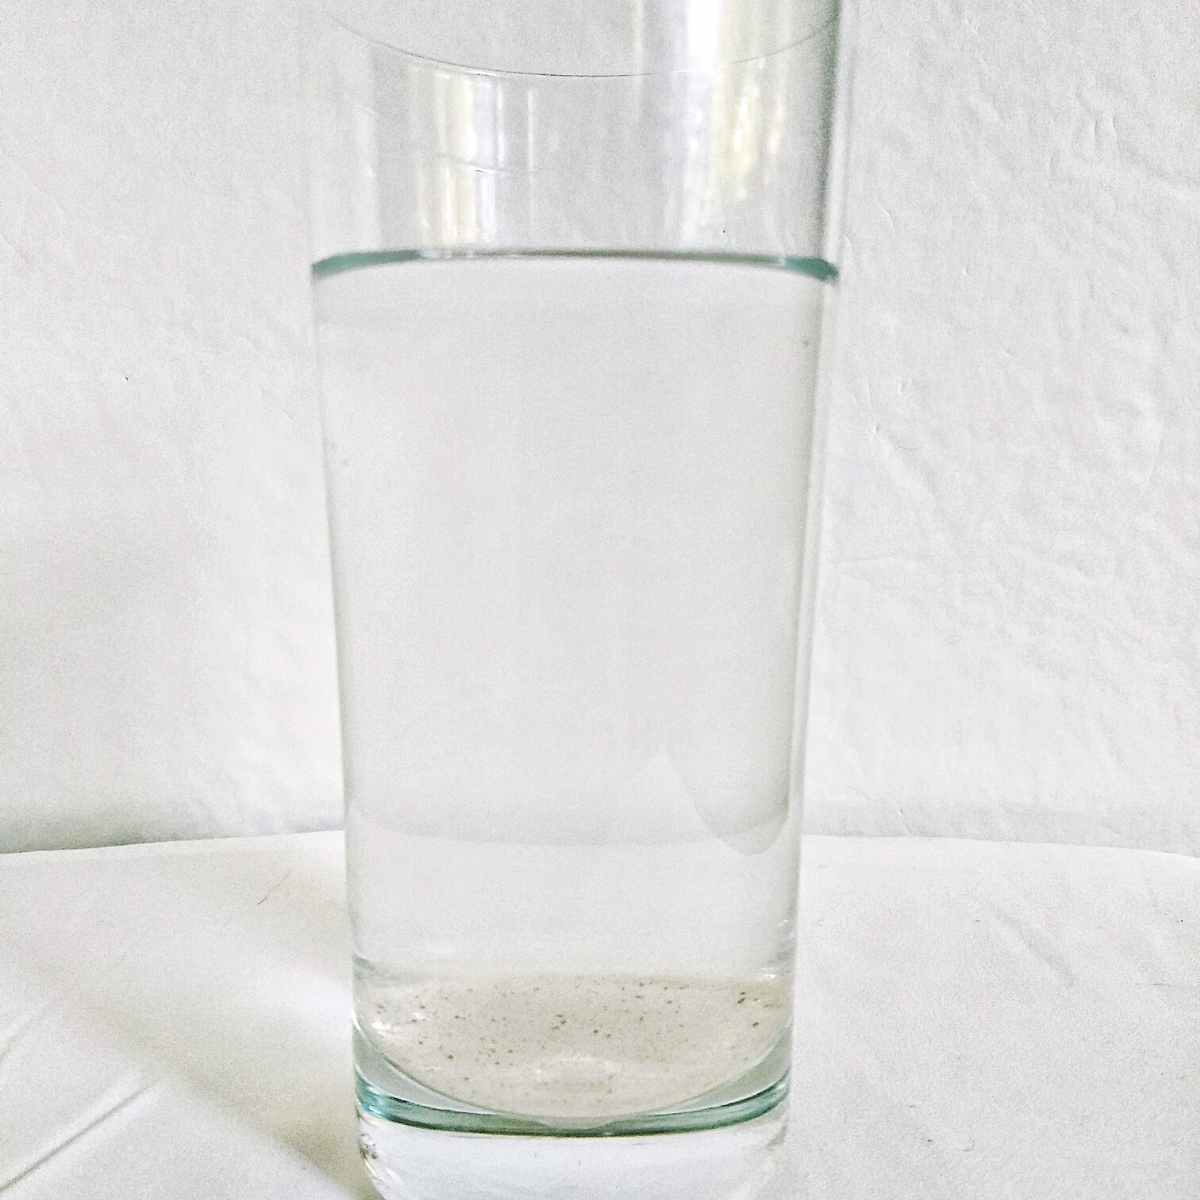 blandet relyteelektrolyttblanding med vann i et glass - Re-Lyte Electrolyte Drink Mix: anmeldelse